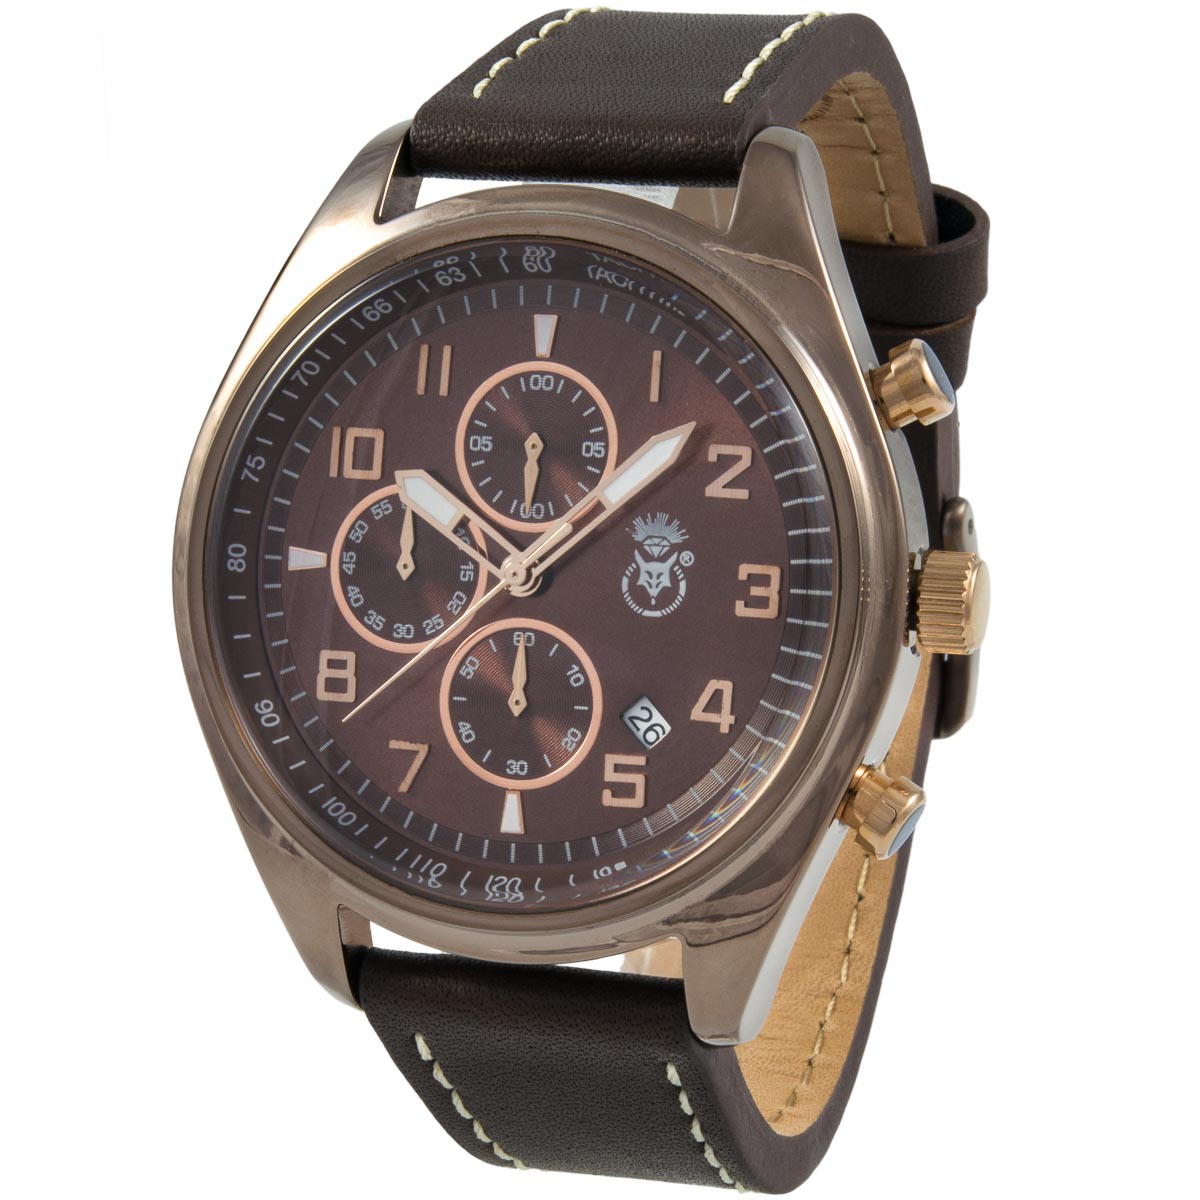 K.V. Fuchs Design Herren Chronograph Armbanduhr mit Datum, Stoppfunktion in braun mit Lederarmband in braun »CH-149-03-Braun«